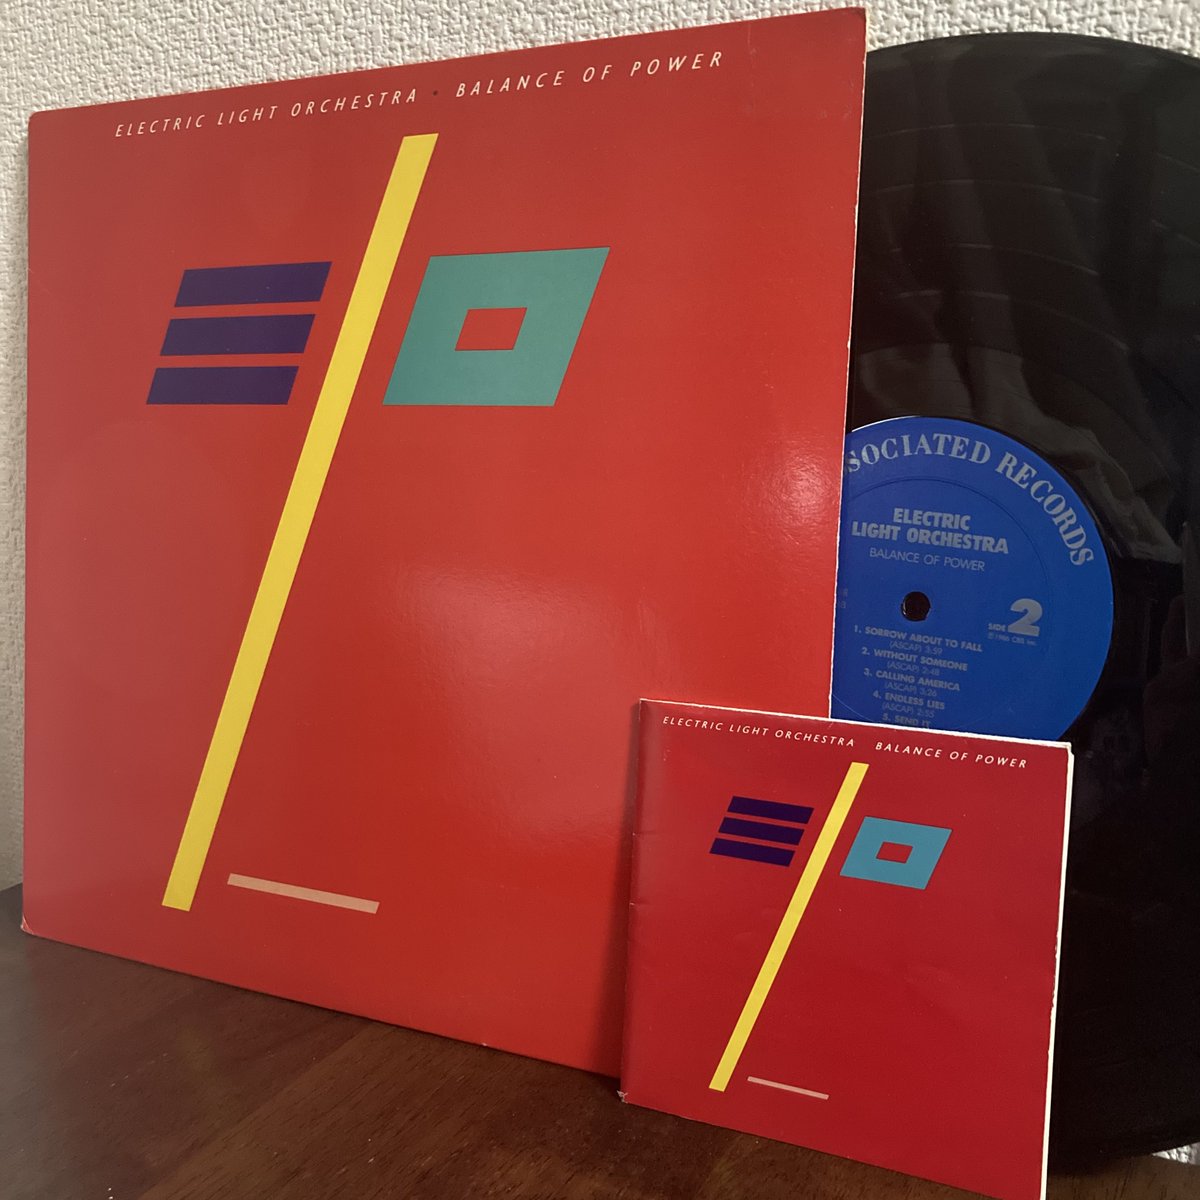 38年前の1986年2月17日アルバム発売。

Electric Light Orchestra - Balance of Power(UK:9 US:49)

#ElectricLightOrchestra #レコード